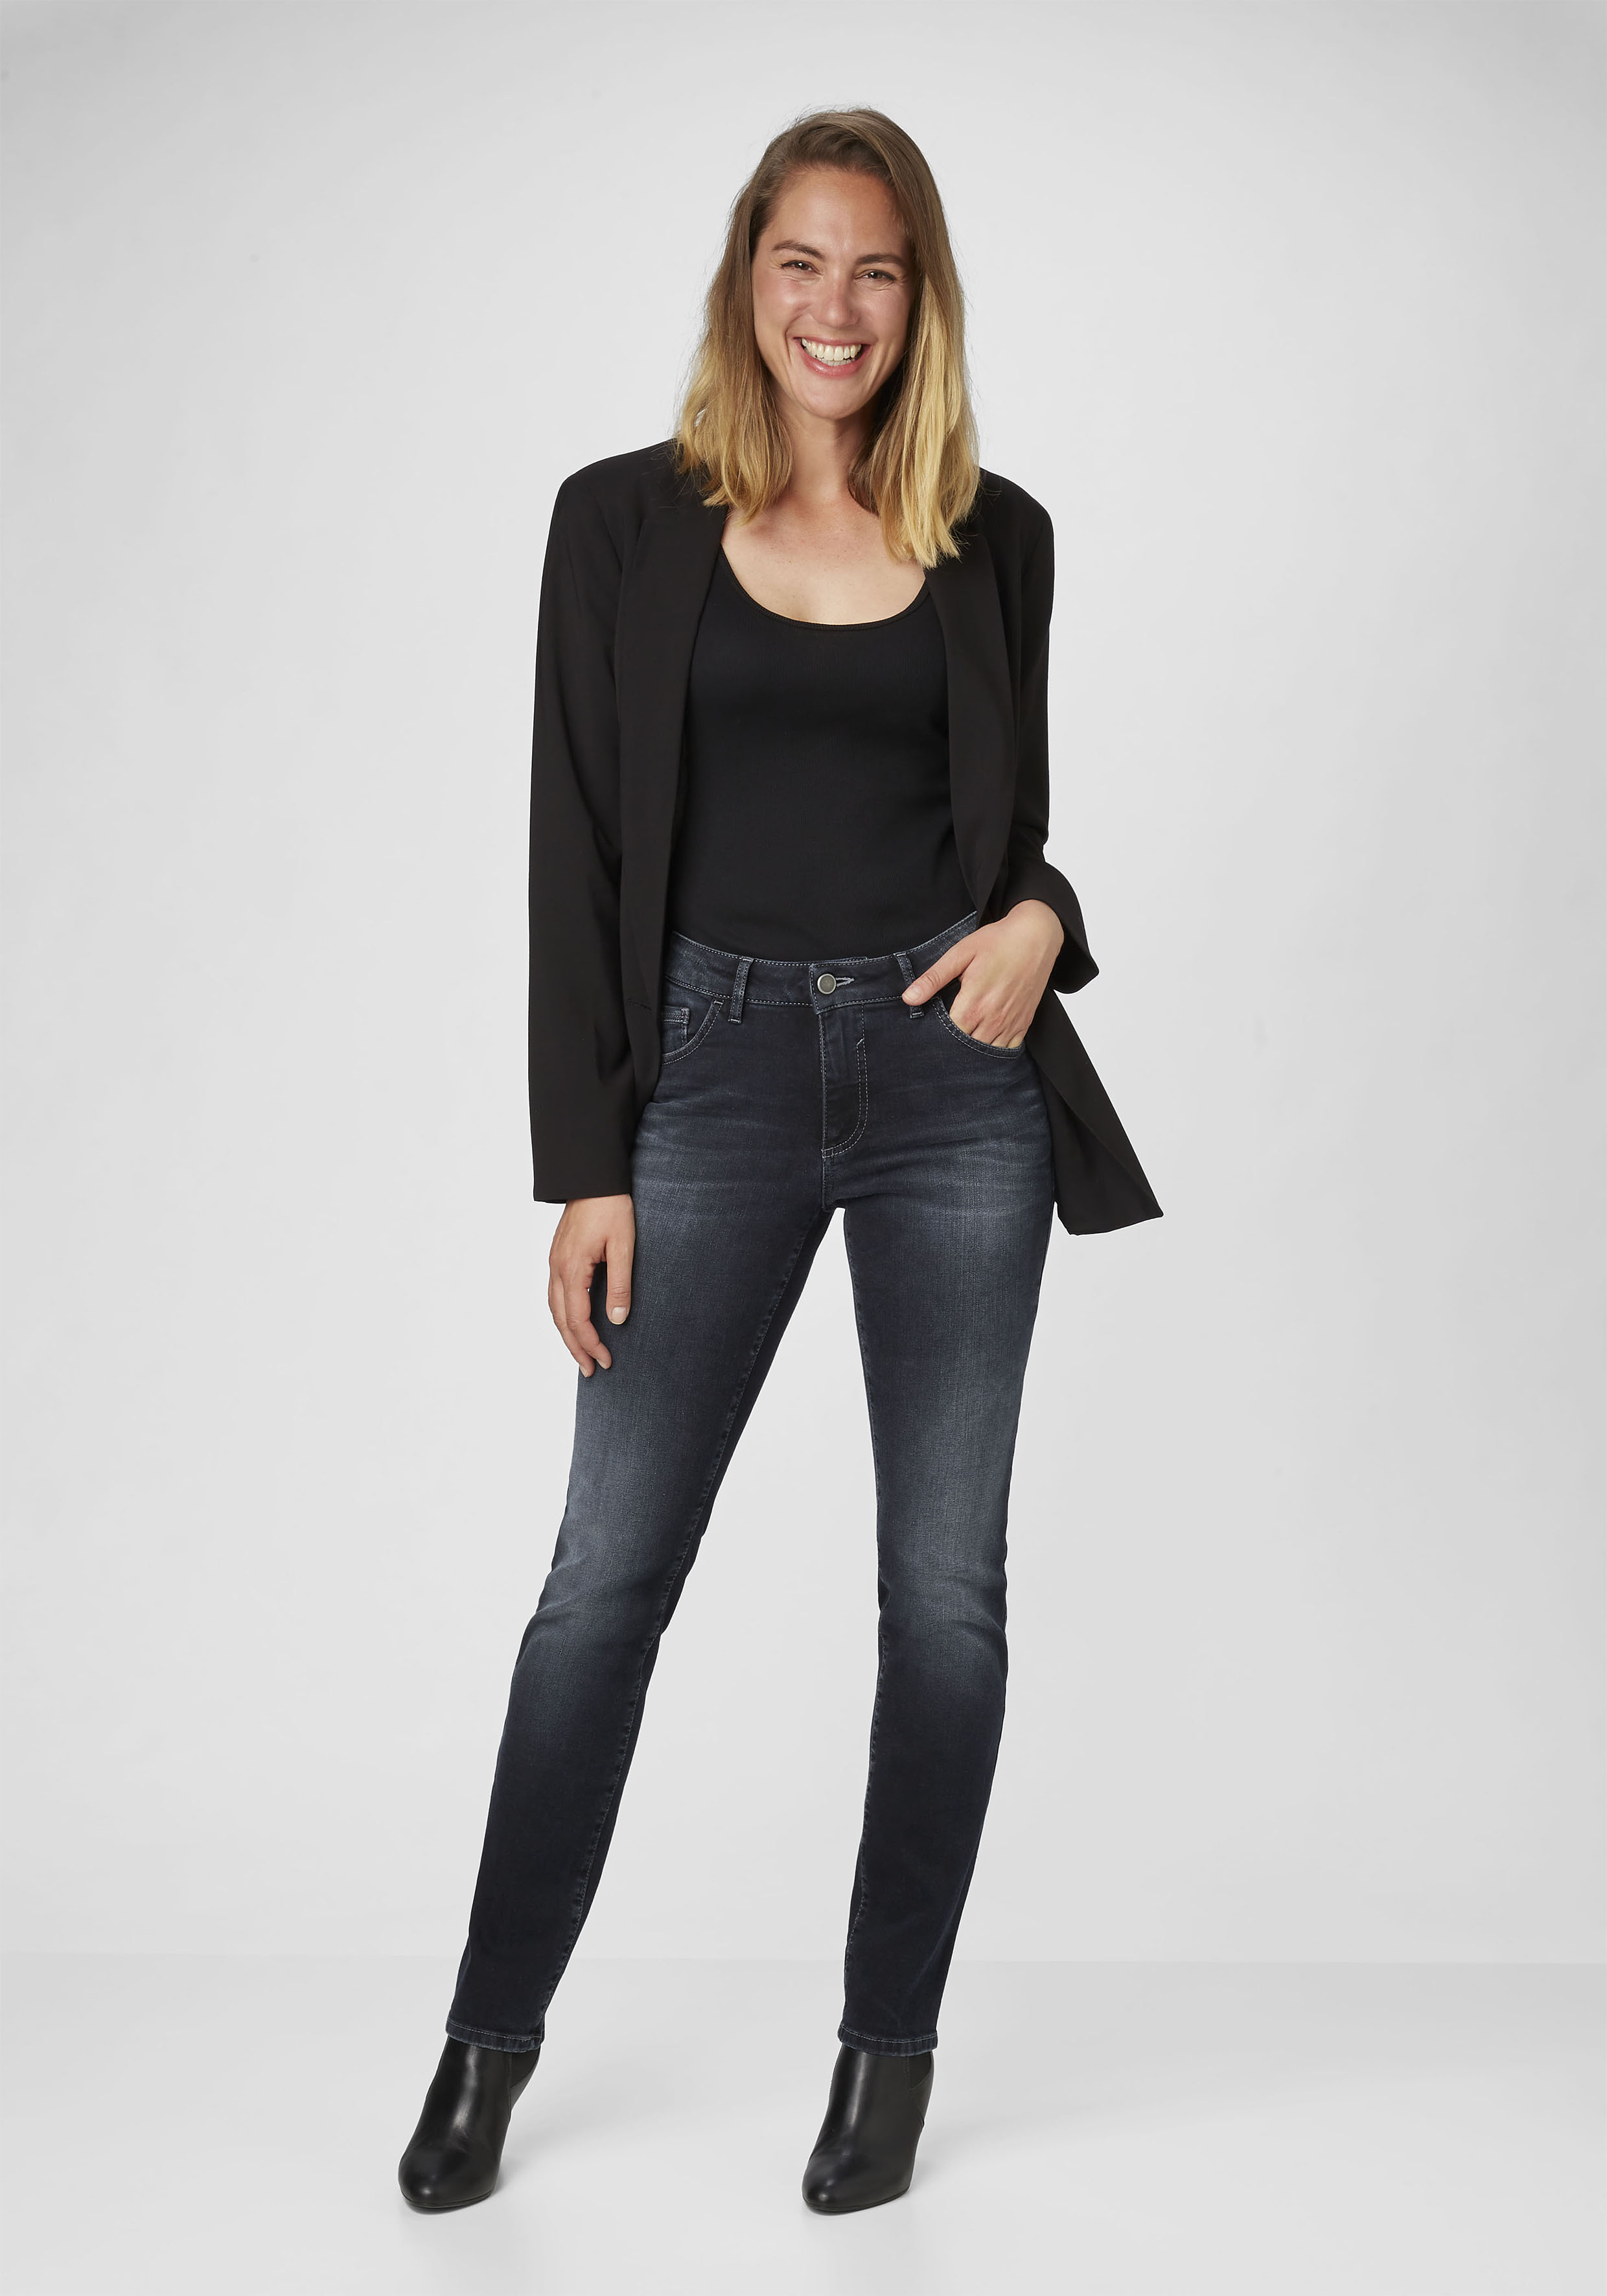 Damen-Jeans direkt | vom kaufen PADDOCK\'S Online Shop Hersteller